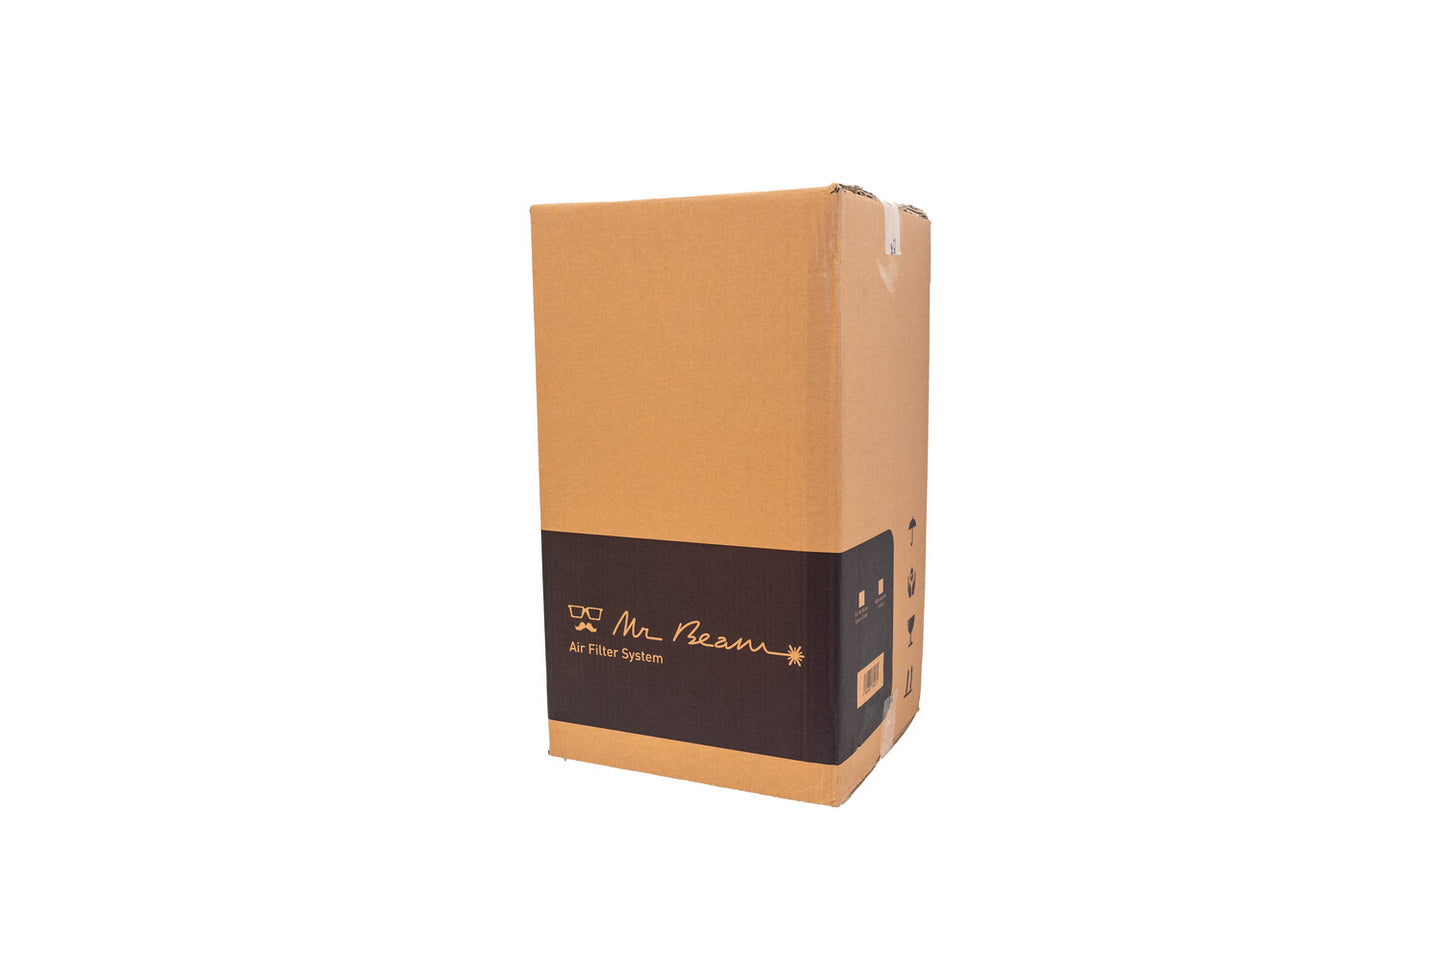 Mr Beam Air Filter II Box &amp; Packaging Material